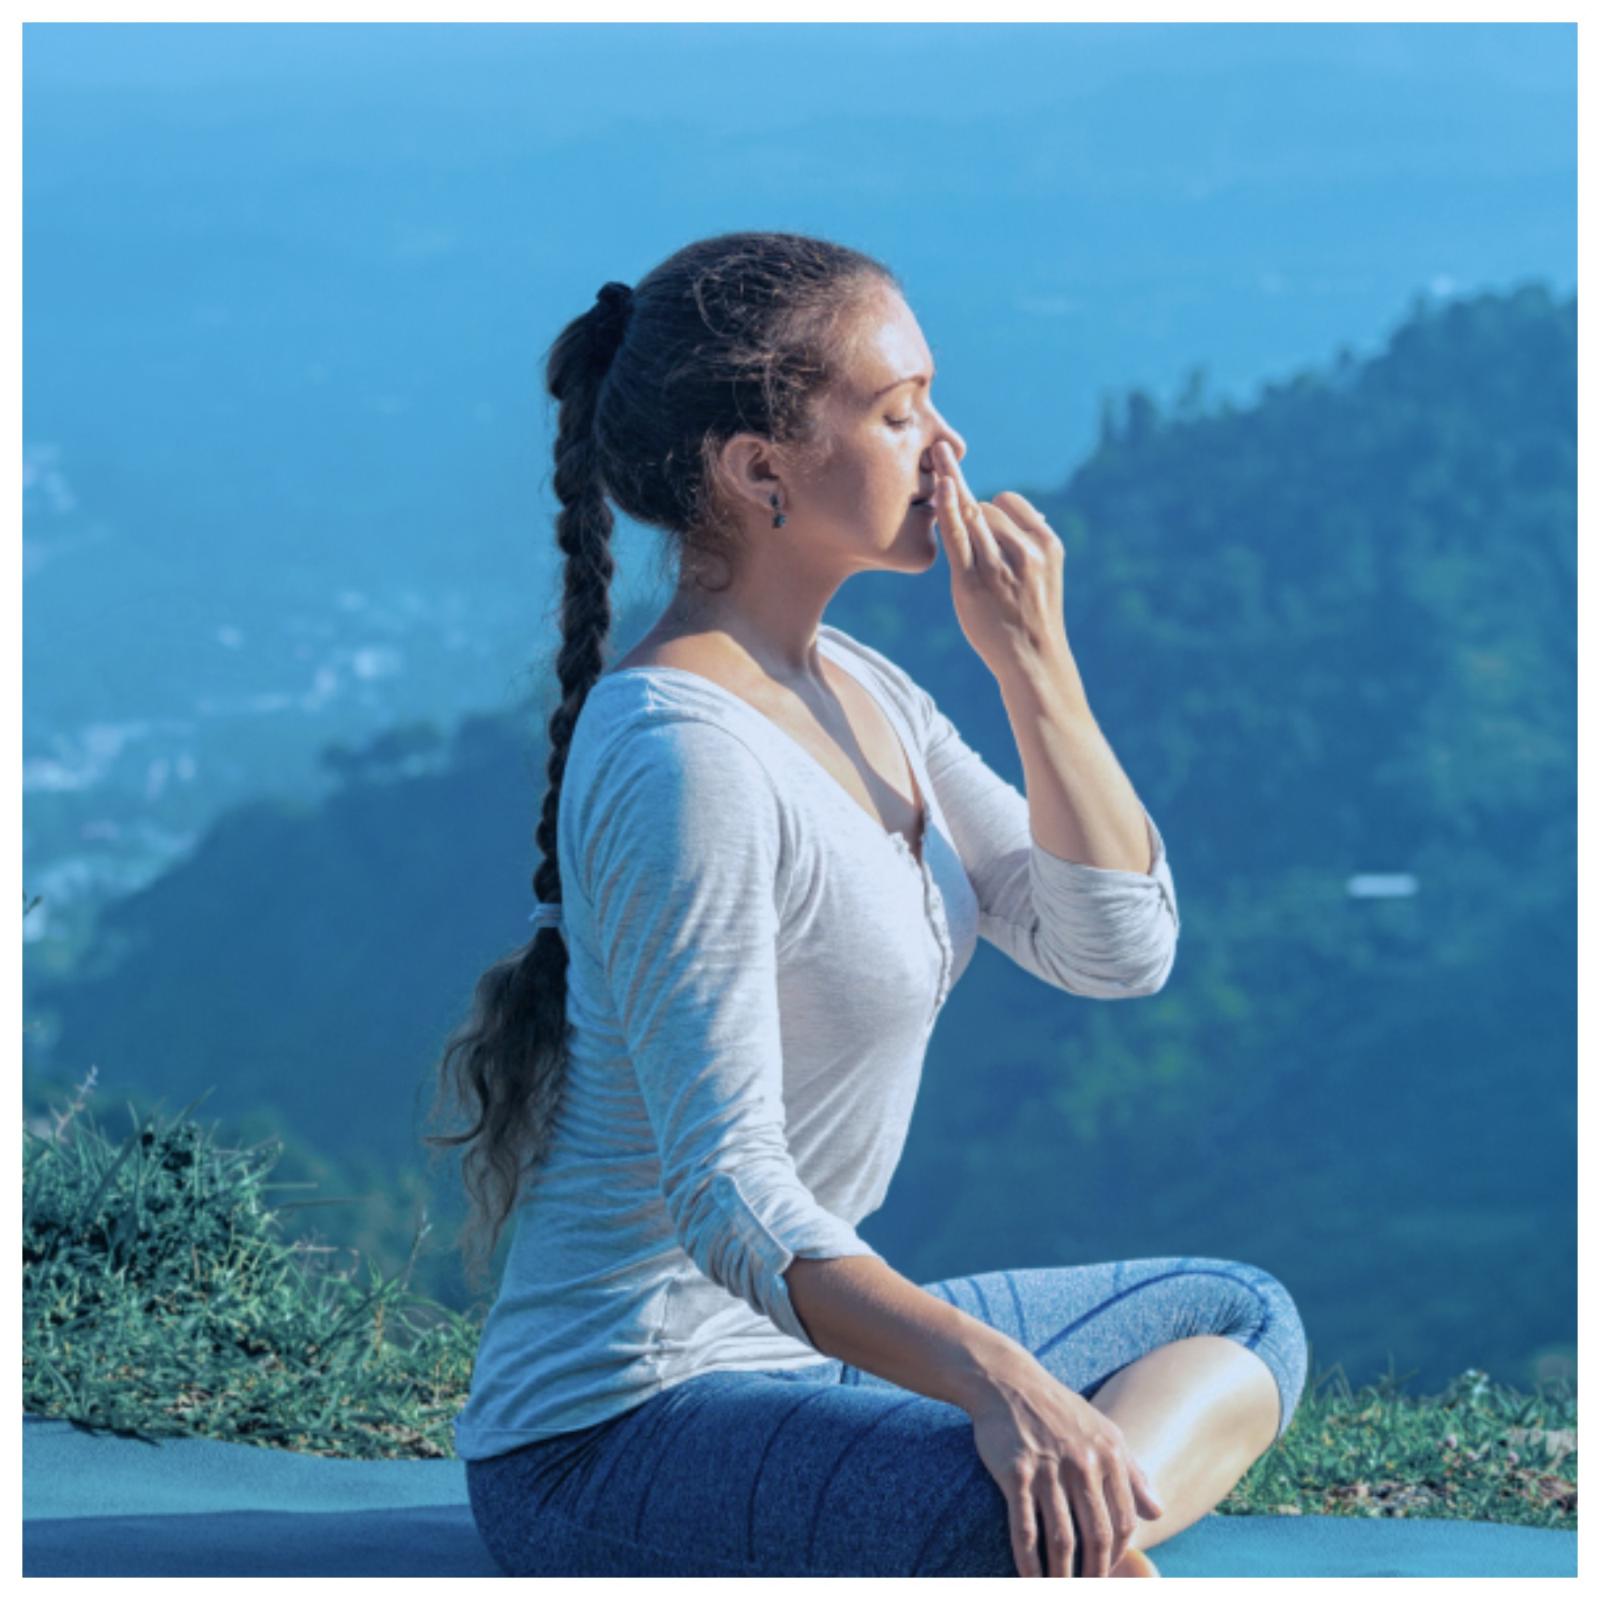 Чтобы выйти из стрессового состояния, достаточно выполнять дыхательные практики 3-5 минут ежедневно